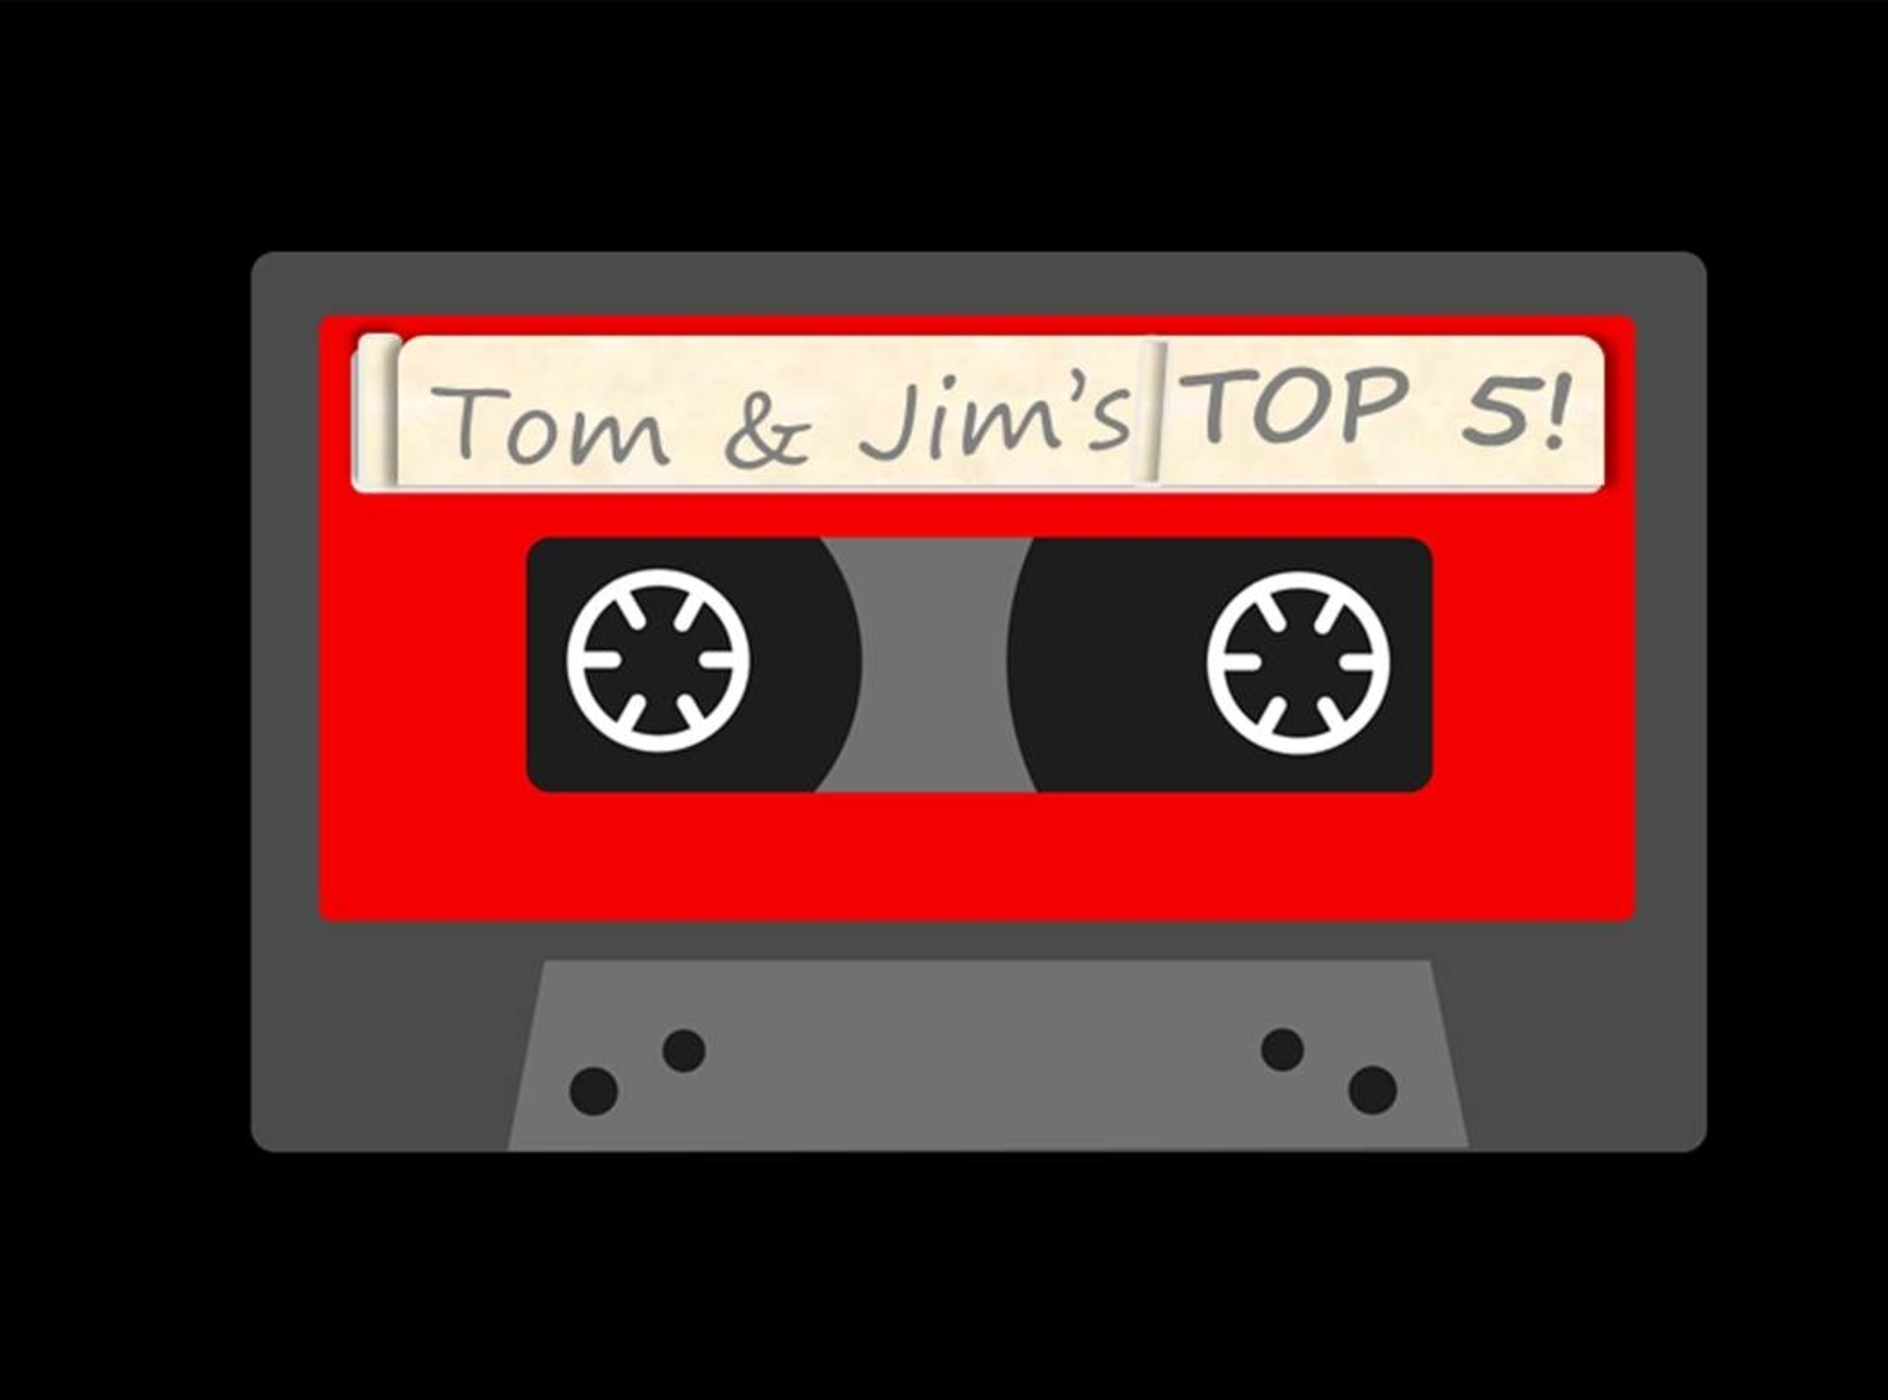 Episode 13 - When Tom met Jim